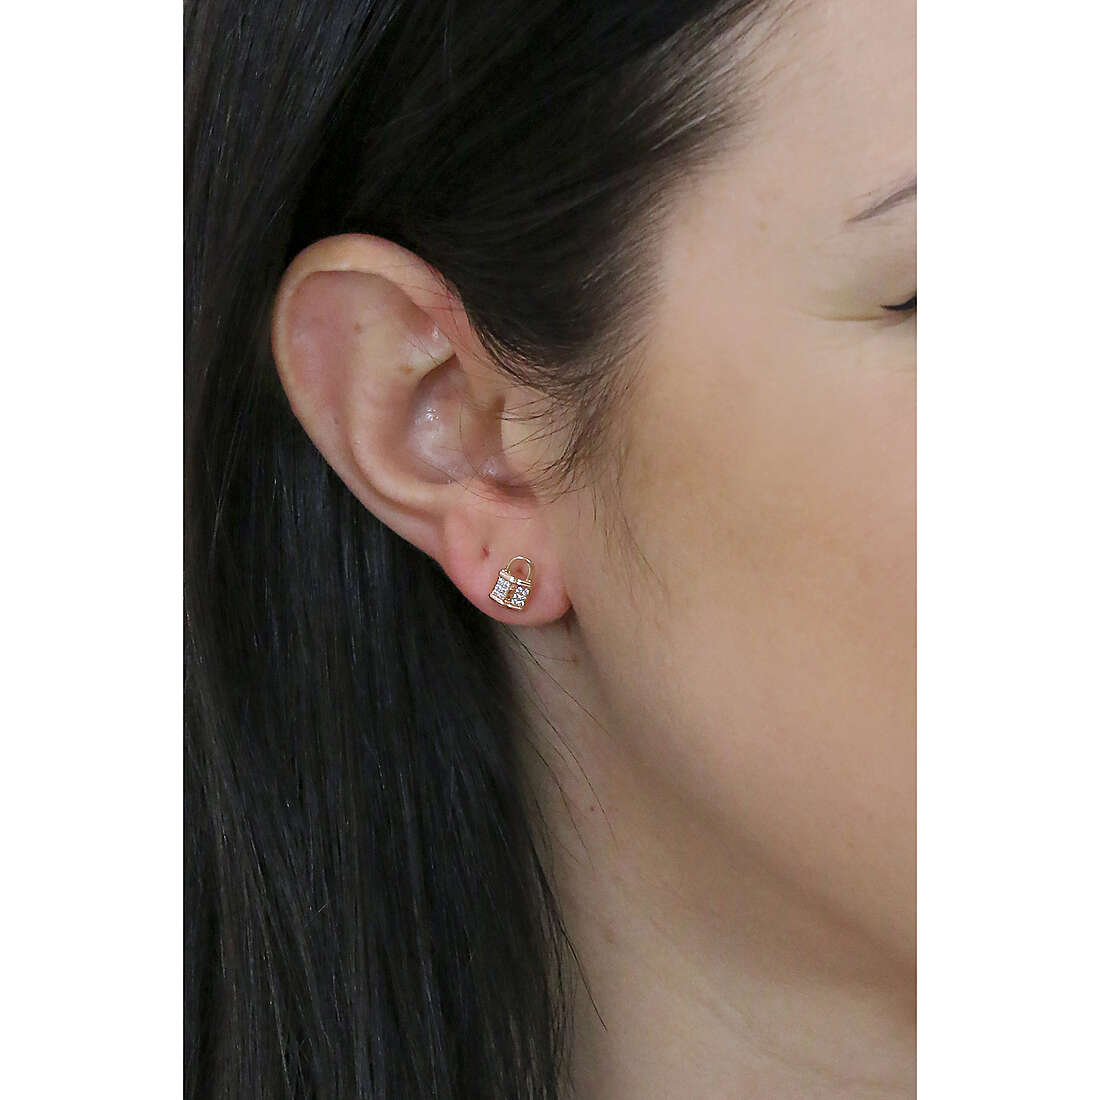 Rosato earrings Storie woman RZO027 wearing